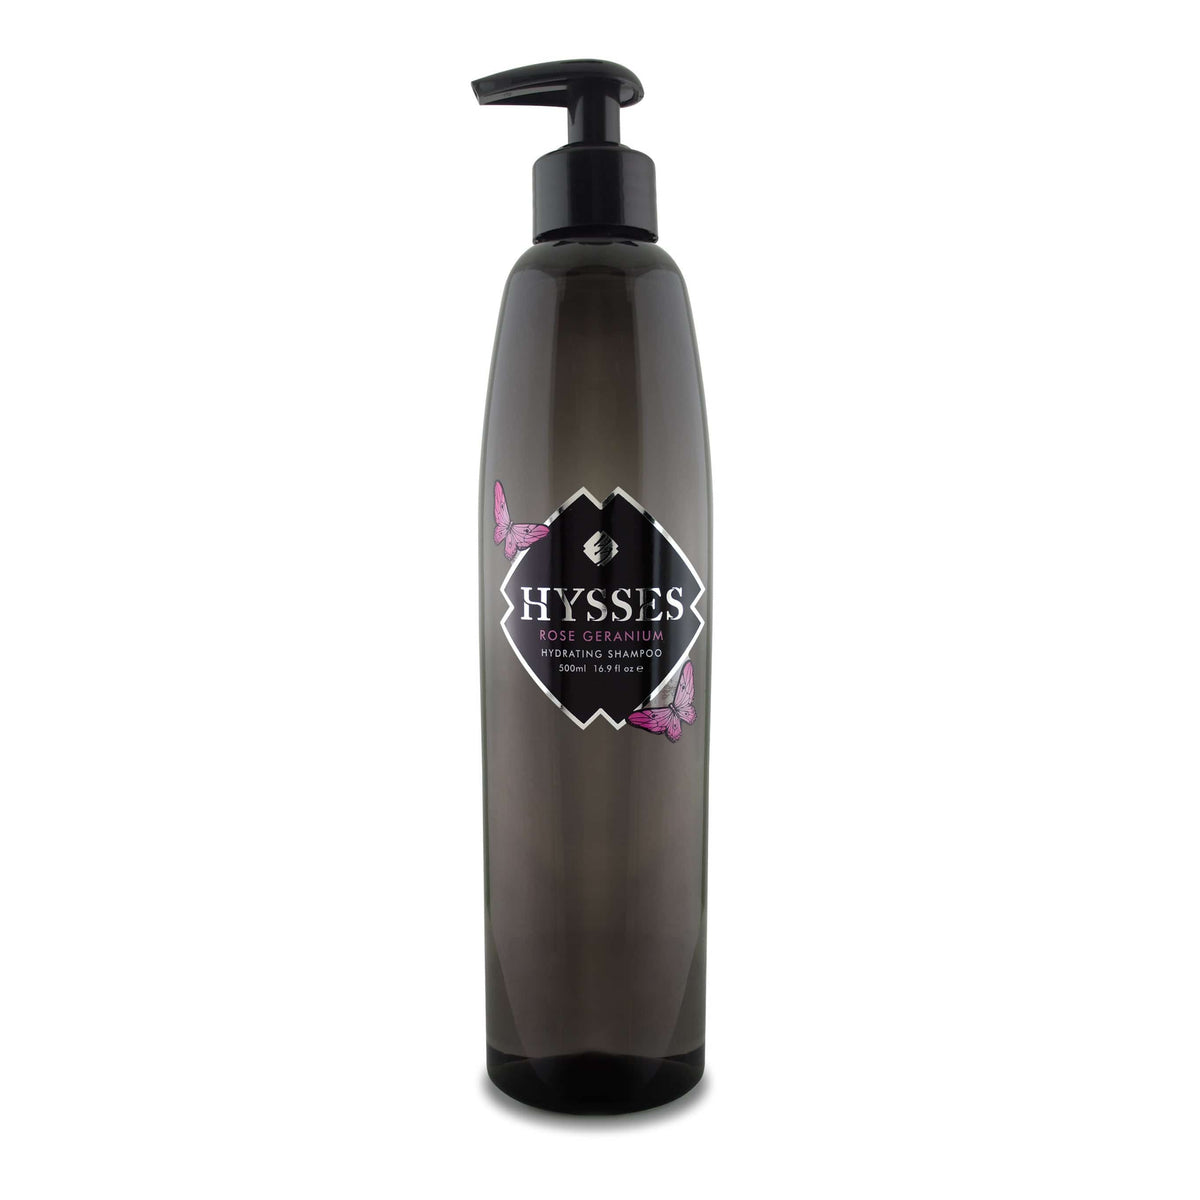 Hysses Hair Care 500ml Shampoo Rose Geranium, 500ml